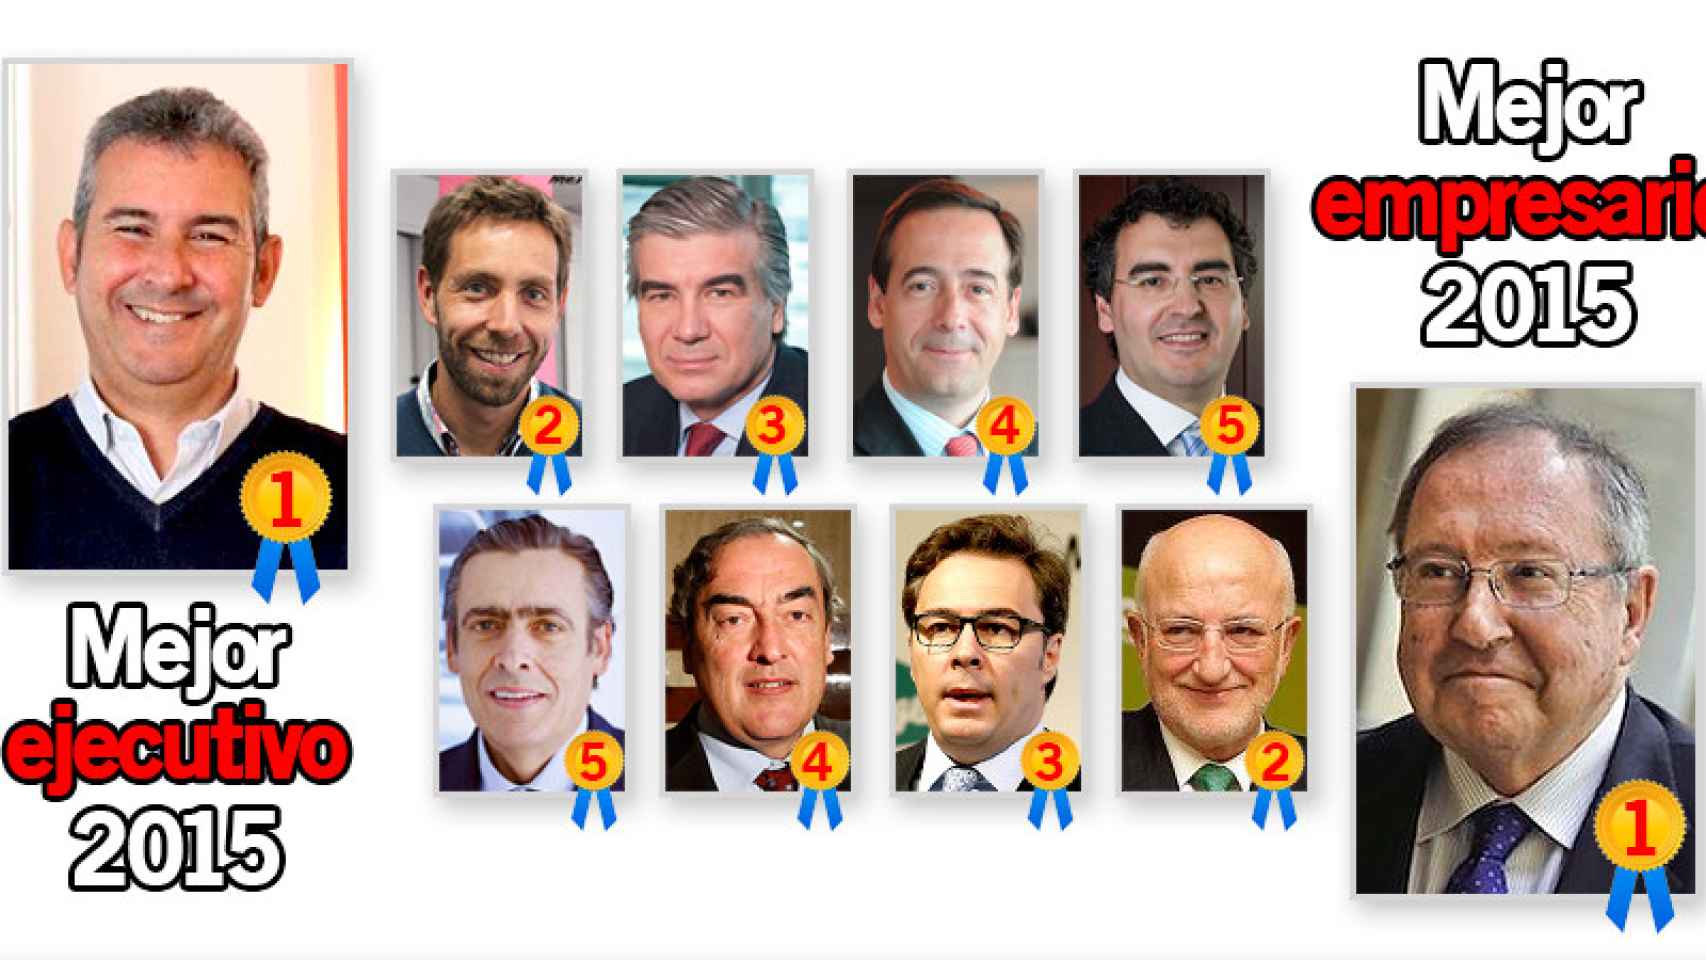 Arnaldo Muñoz y Josep Lluís Bonet, mejor ejecutivo y mejor empresario de 2015, respectivamente, según la encuesta de Crónica Global